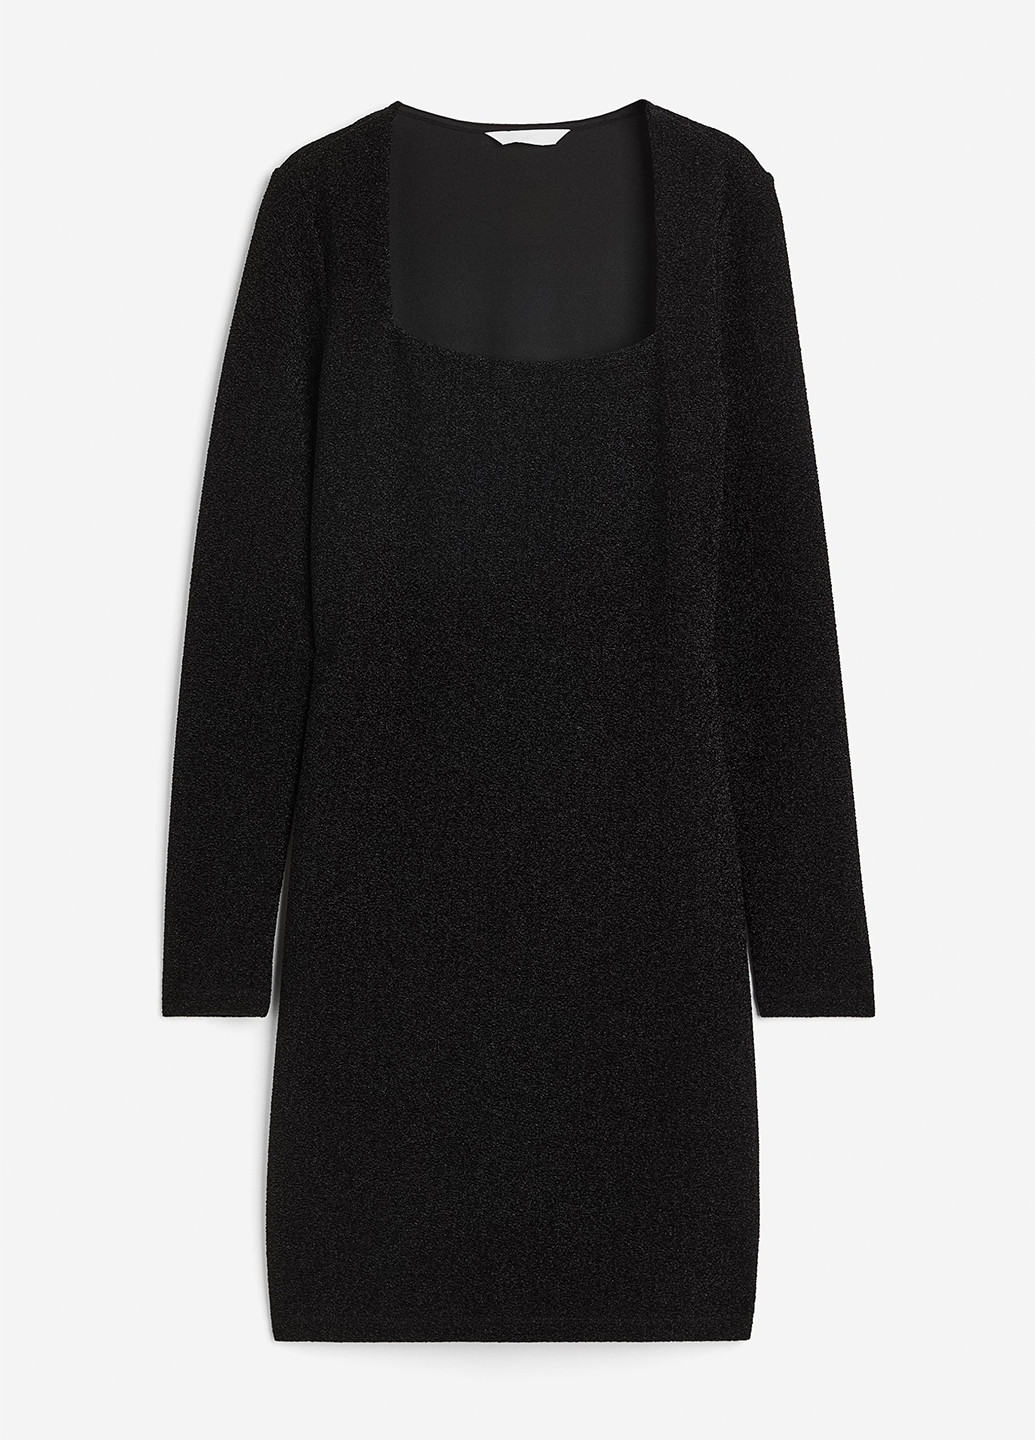 Черное коктейльное платье силуэтная H&M однотонное